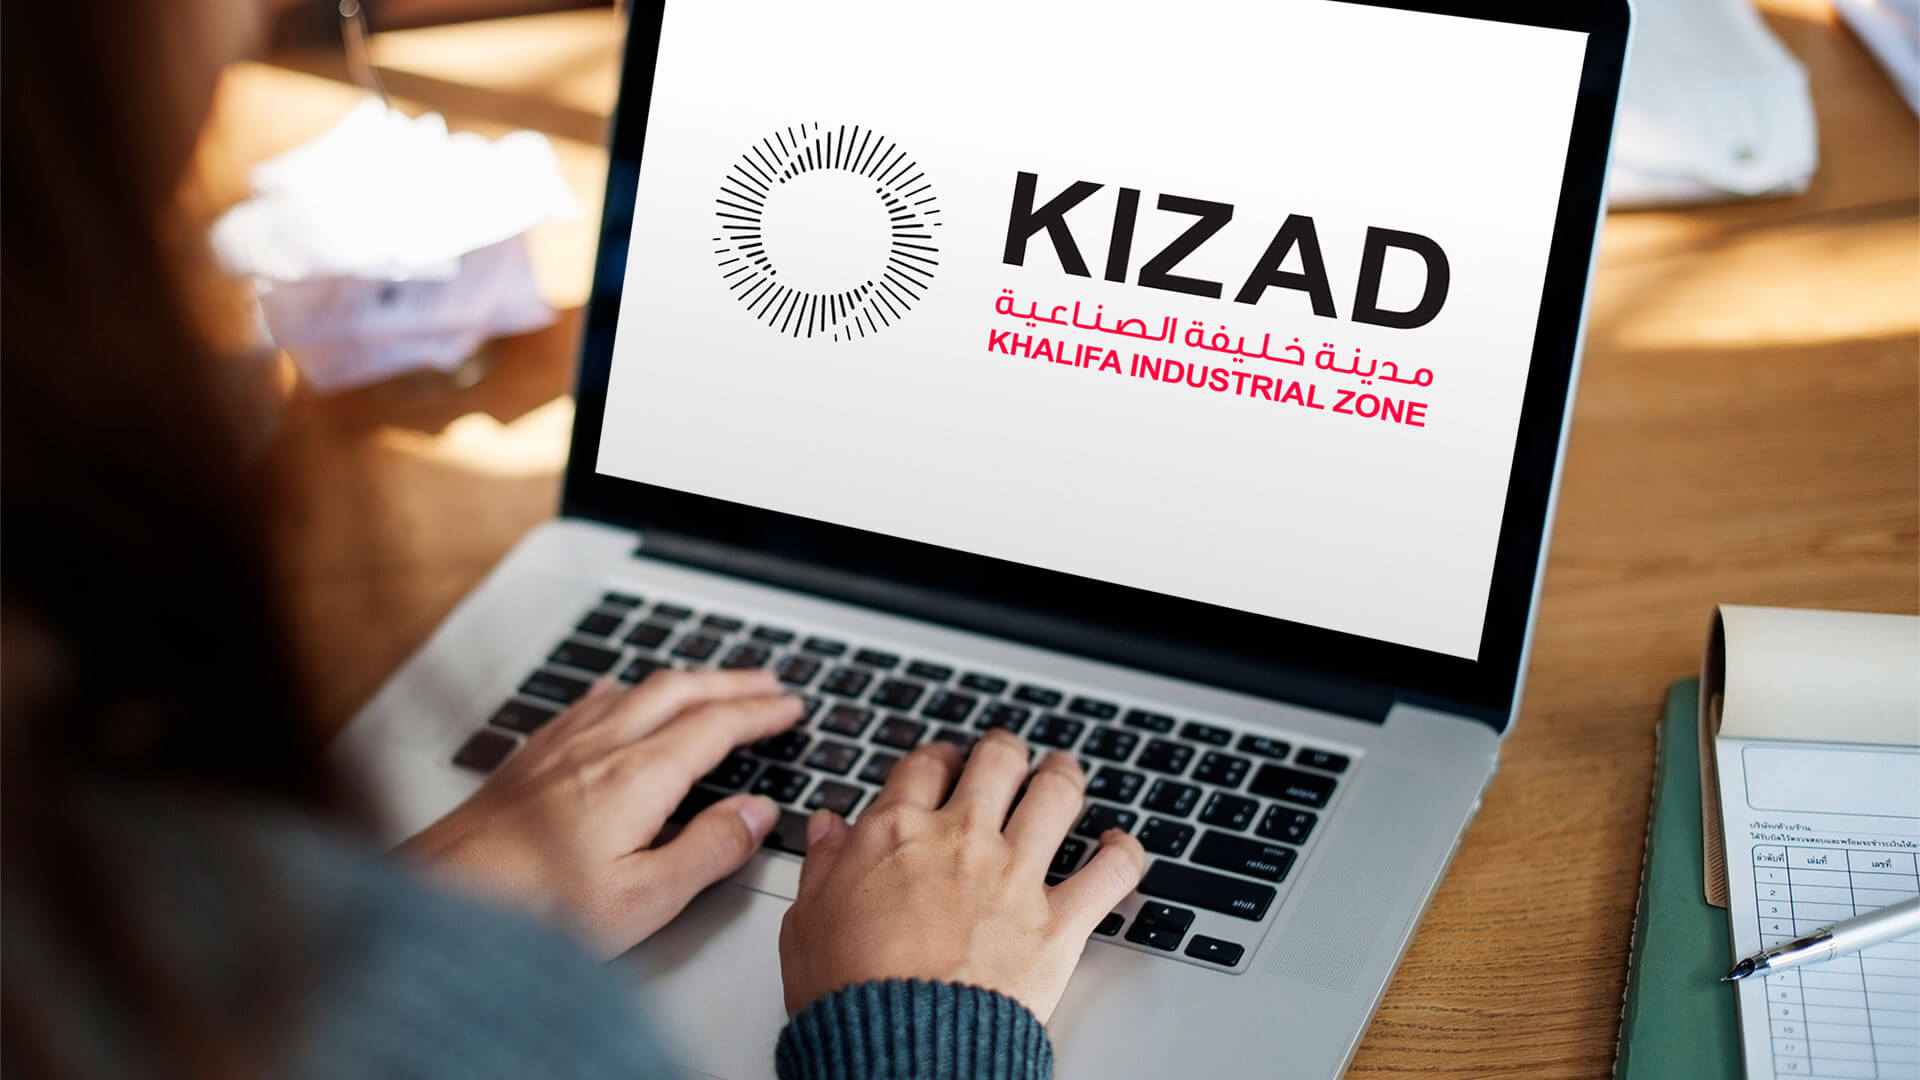 KIZAD free zone business setup